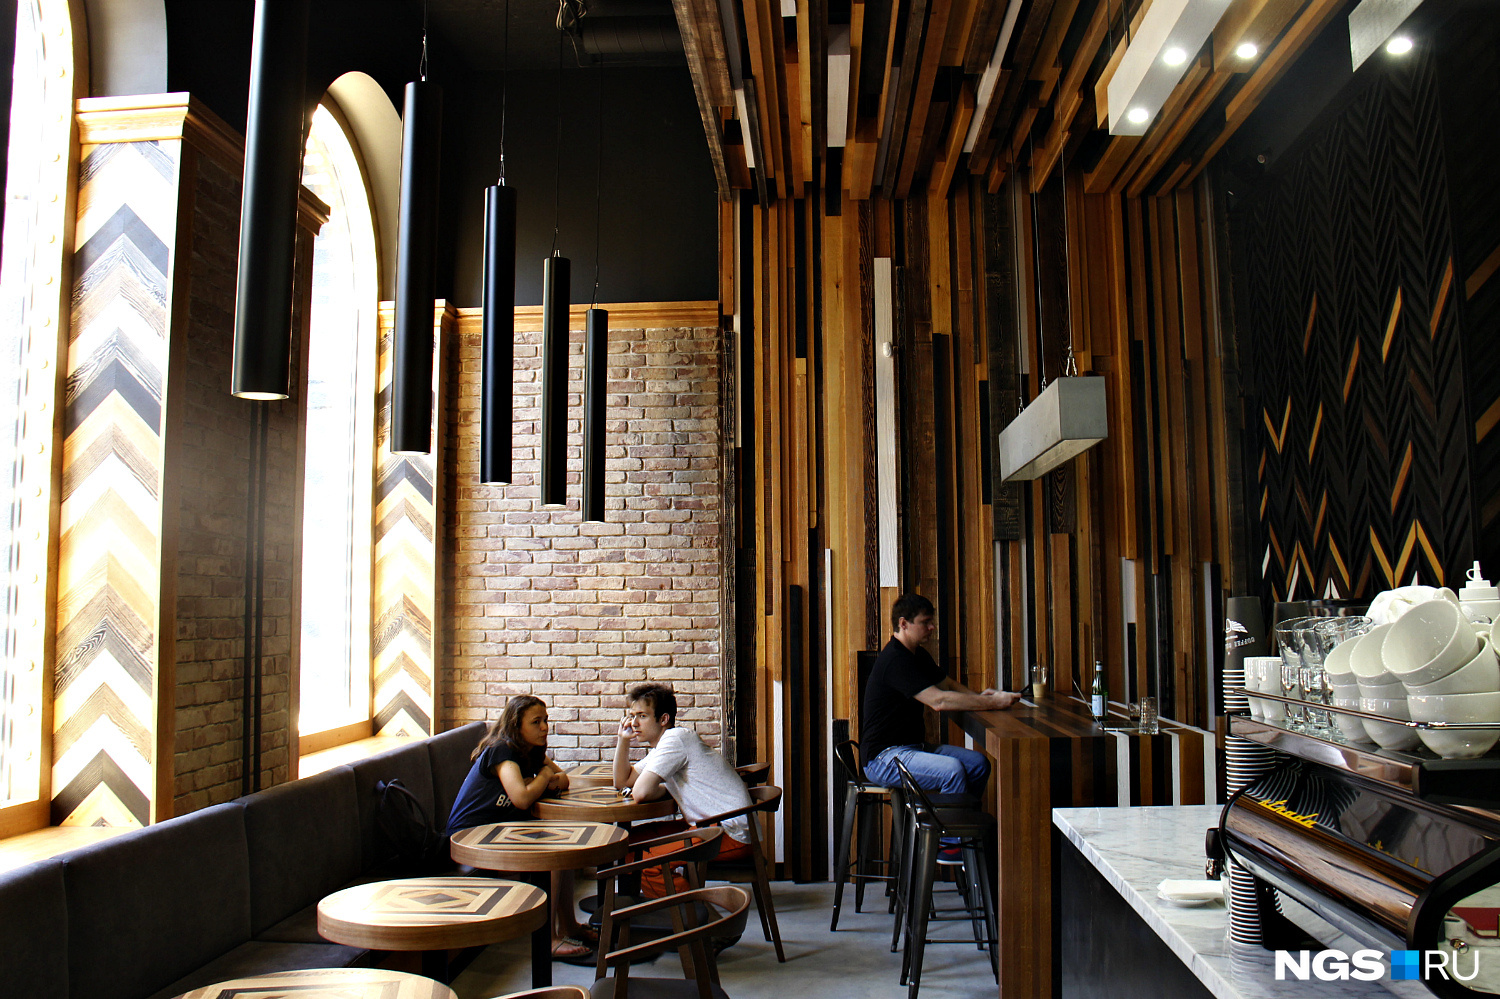 Одна из причин, по которой владельца Coffee Collective привлекло это помещение, — высокие потолки